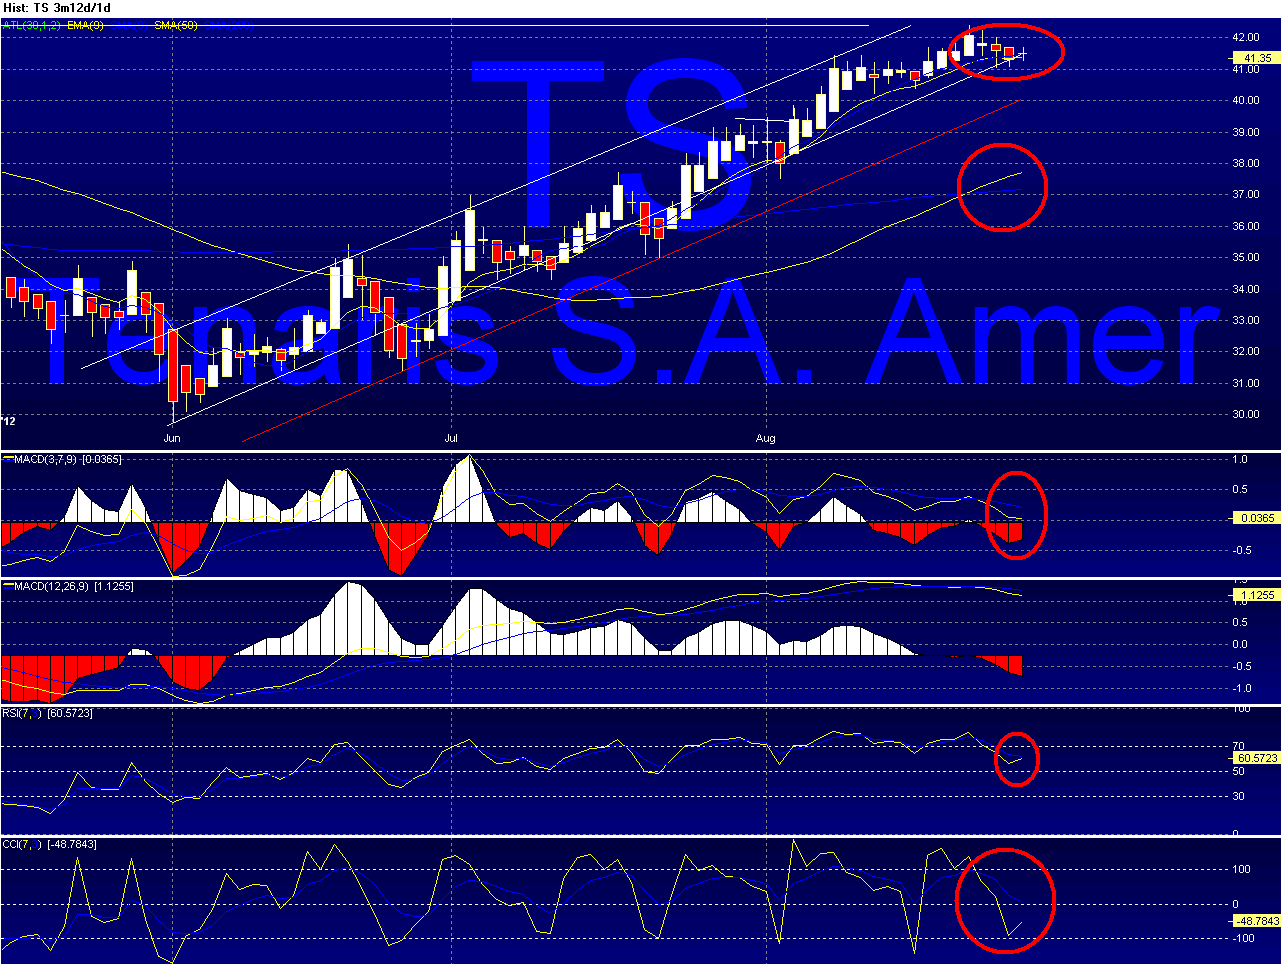 TS - Tenaris Chart_10